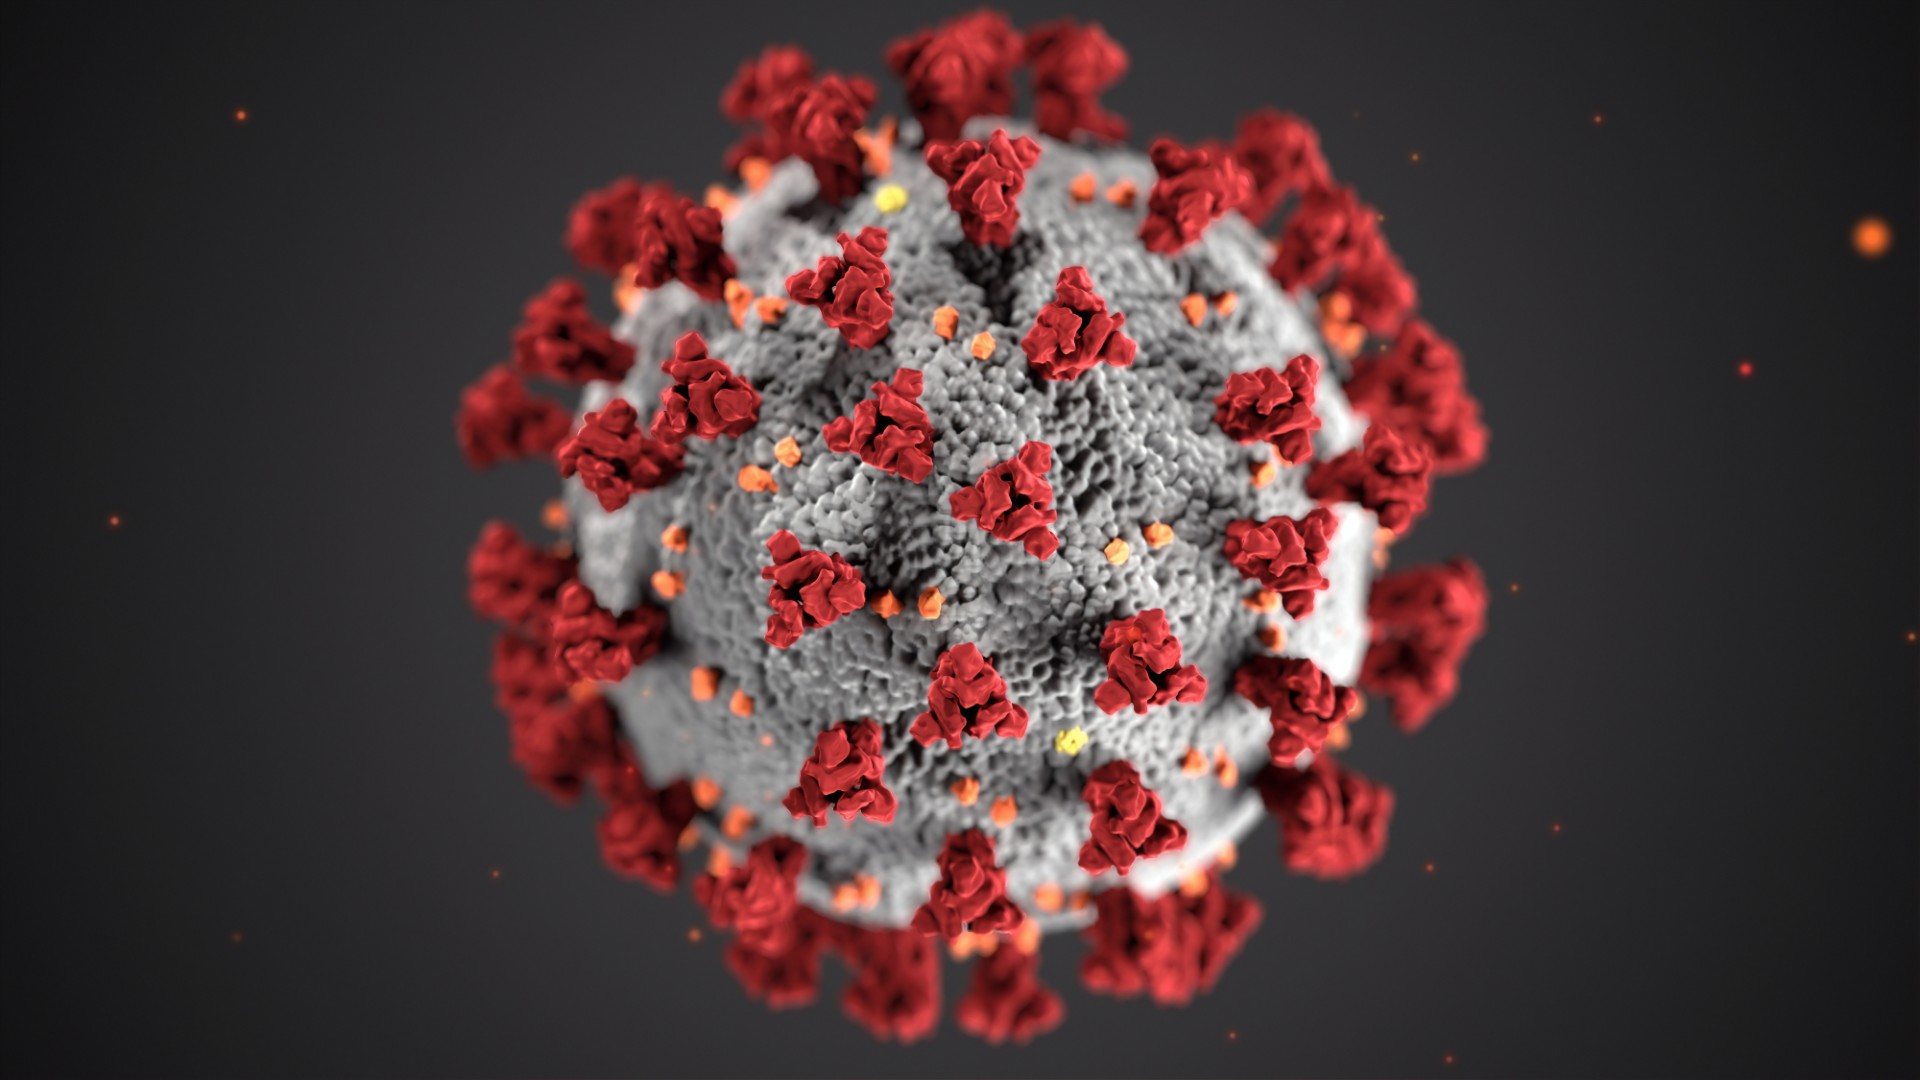 Rechtenvrije foto van het coronavirus door CDC via Unsplash ivm de Covid 19 maatregelen.